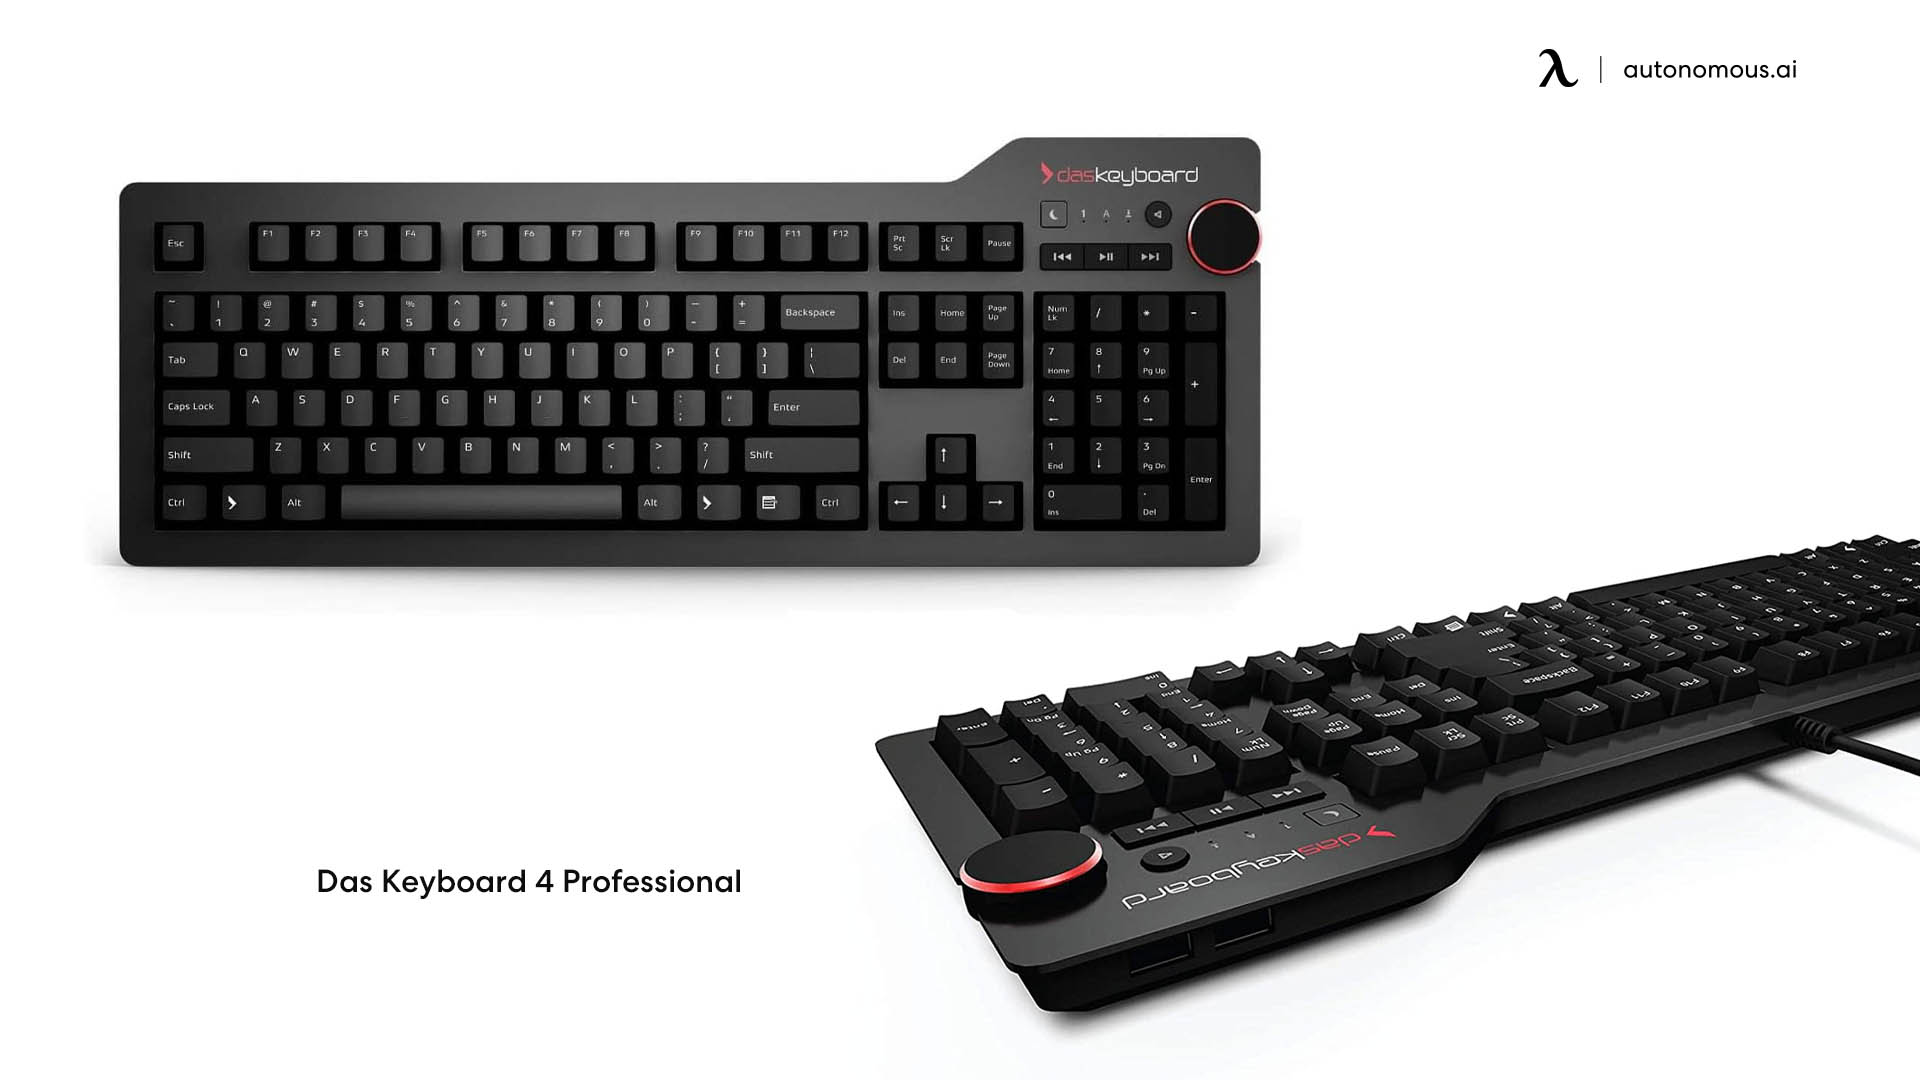 Das Keyboard 4 Professional